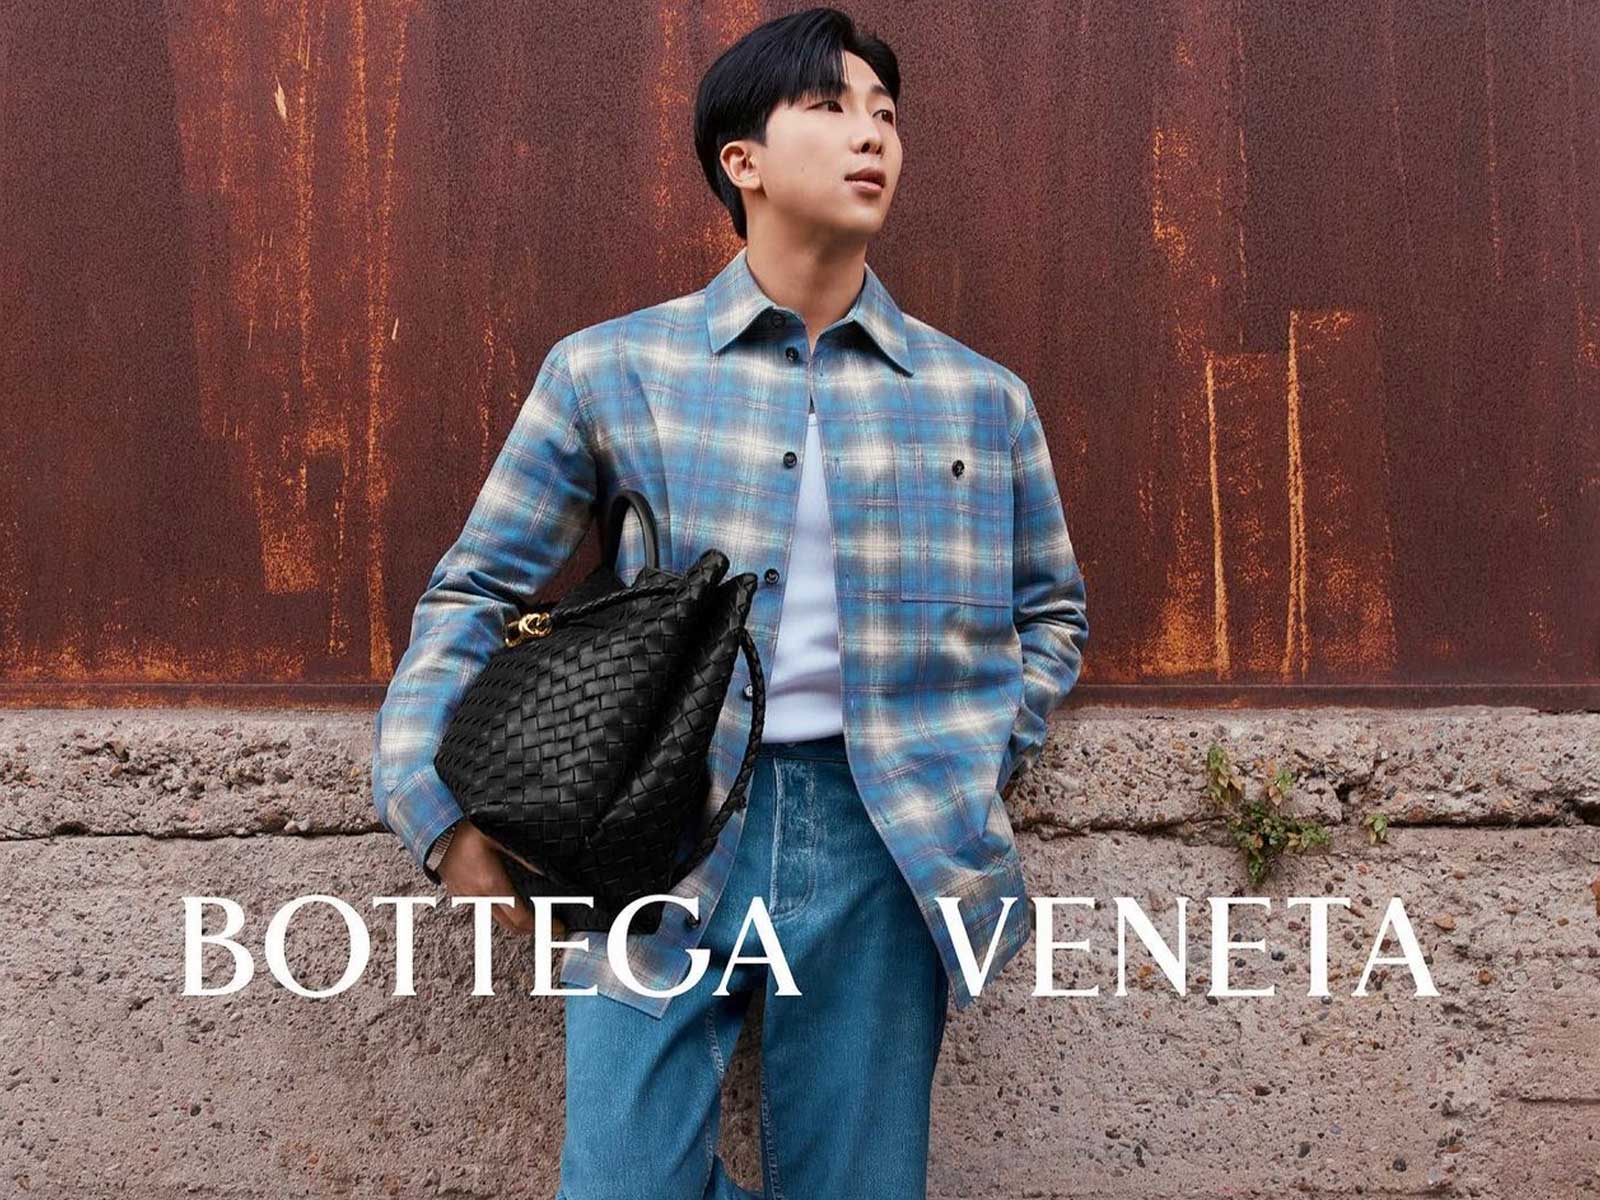 RM del grupo BTS se convierte en embajador de Bottega Veneta